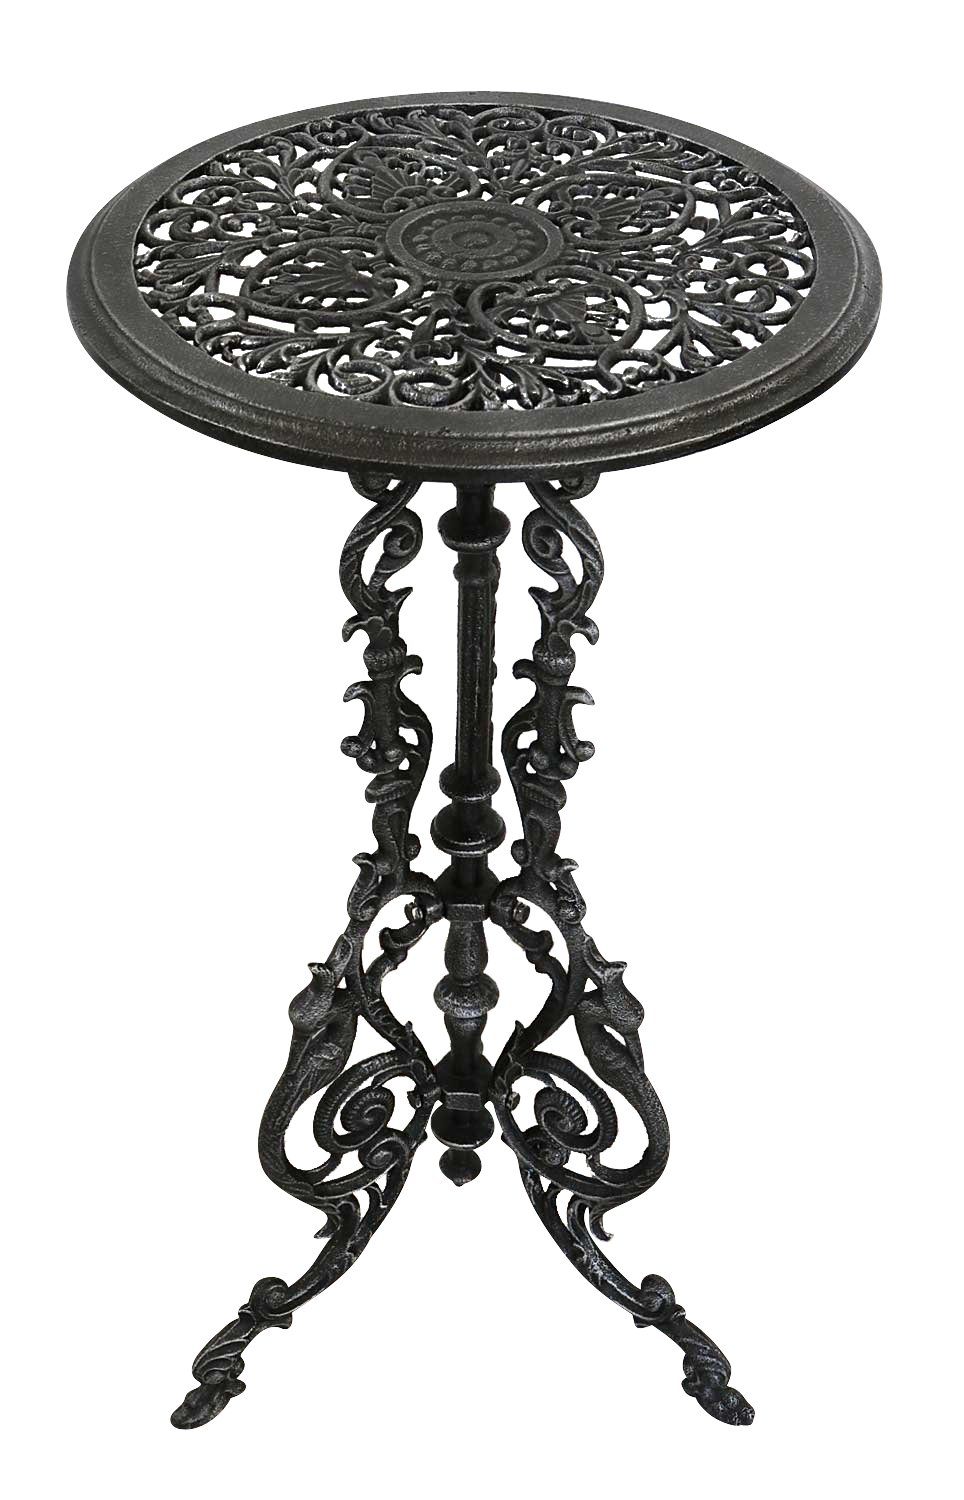 Eisen Aubaho Gartentisch Beistelltisch Tisch Gartentisch 72cm Antik-Stil silber-sch Farbe